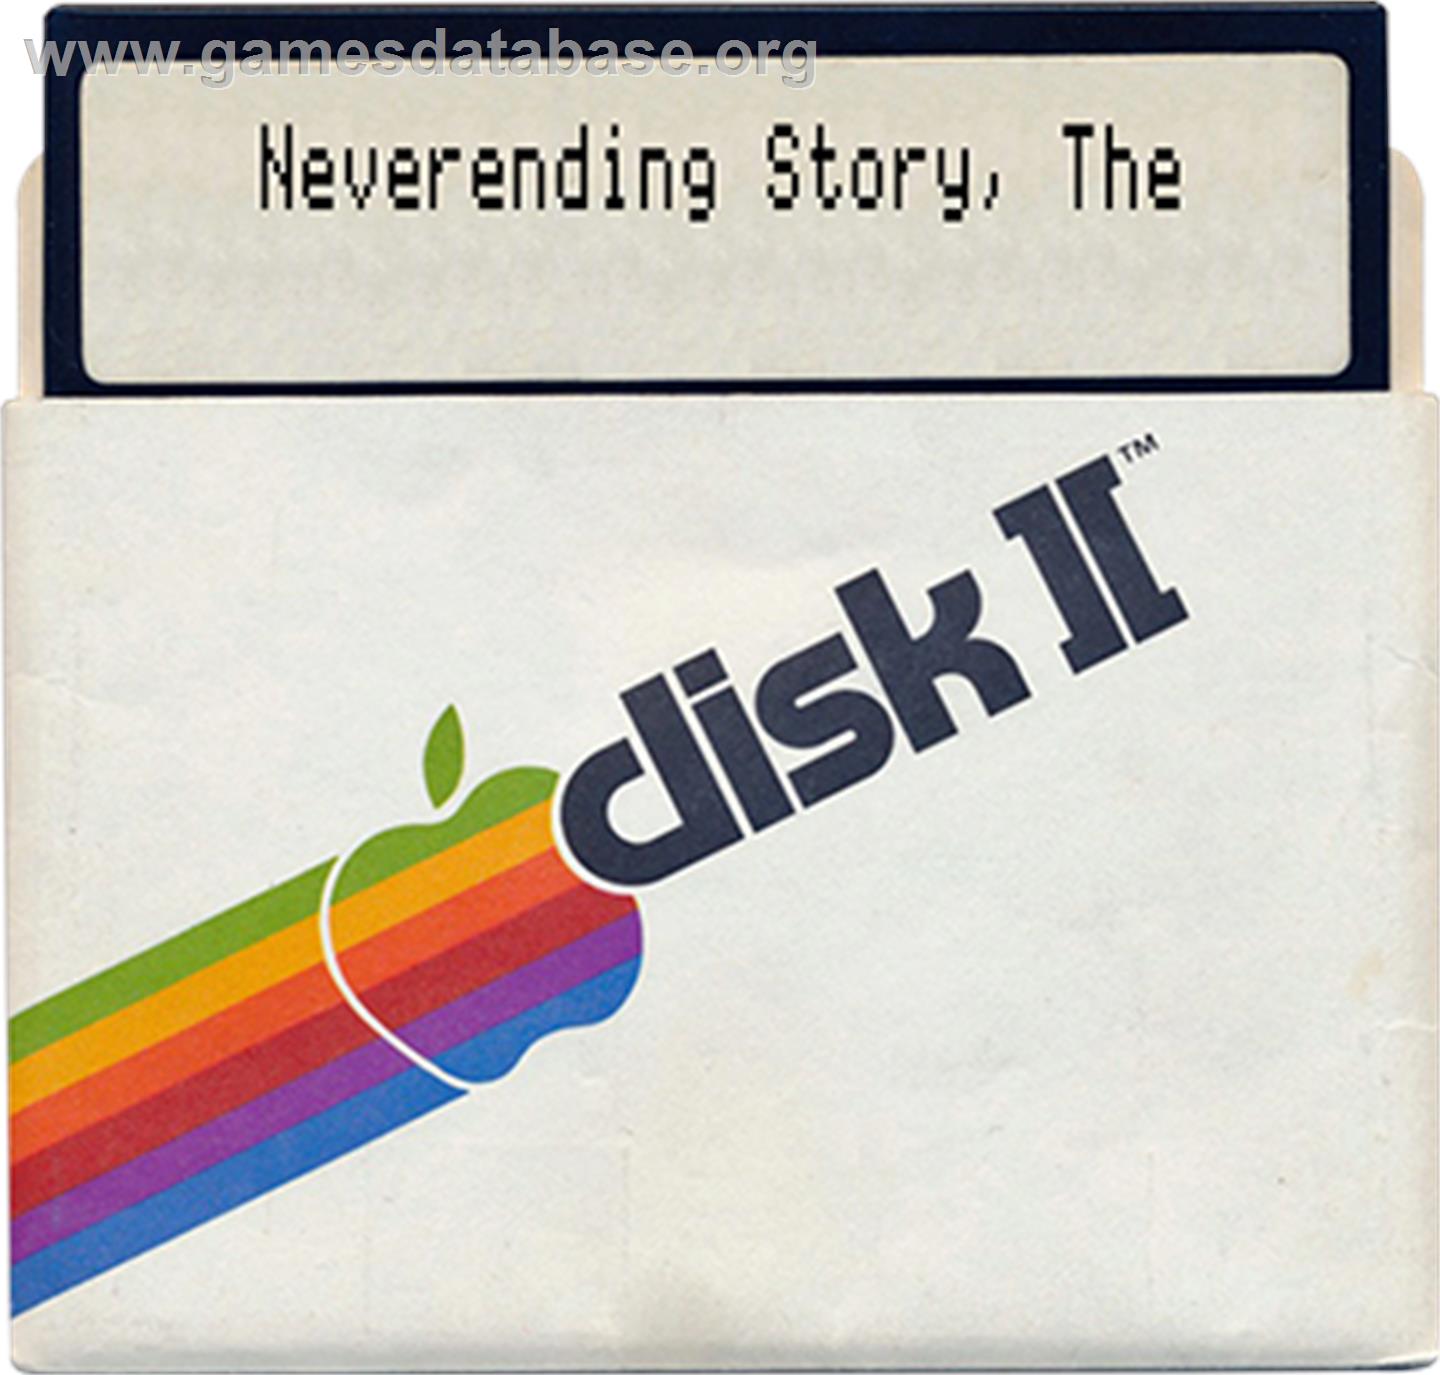 Neverending Story - Apple II - Artwork - Disc